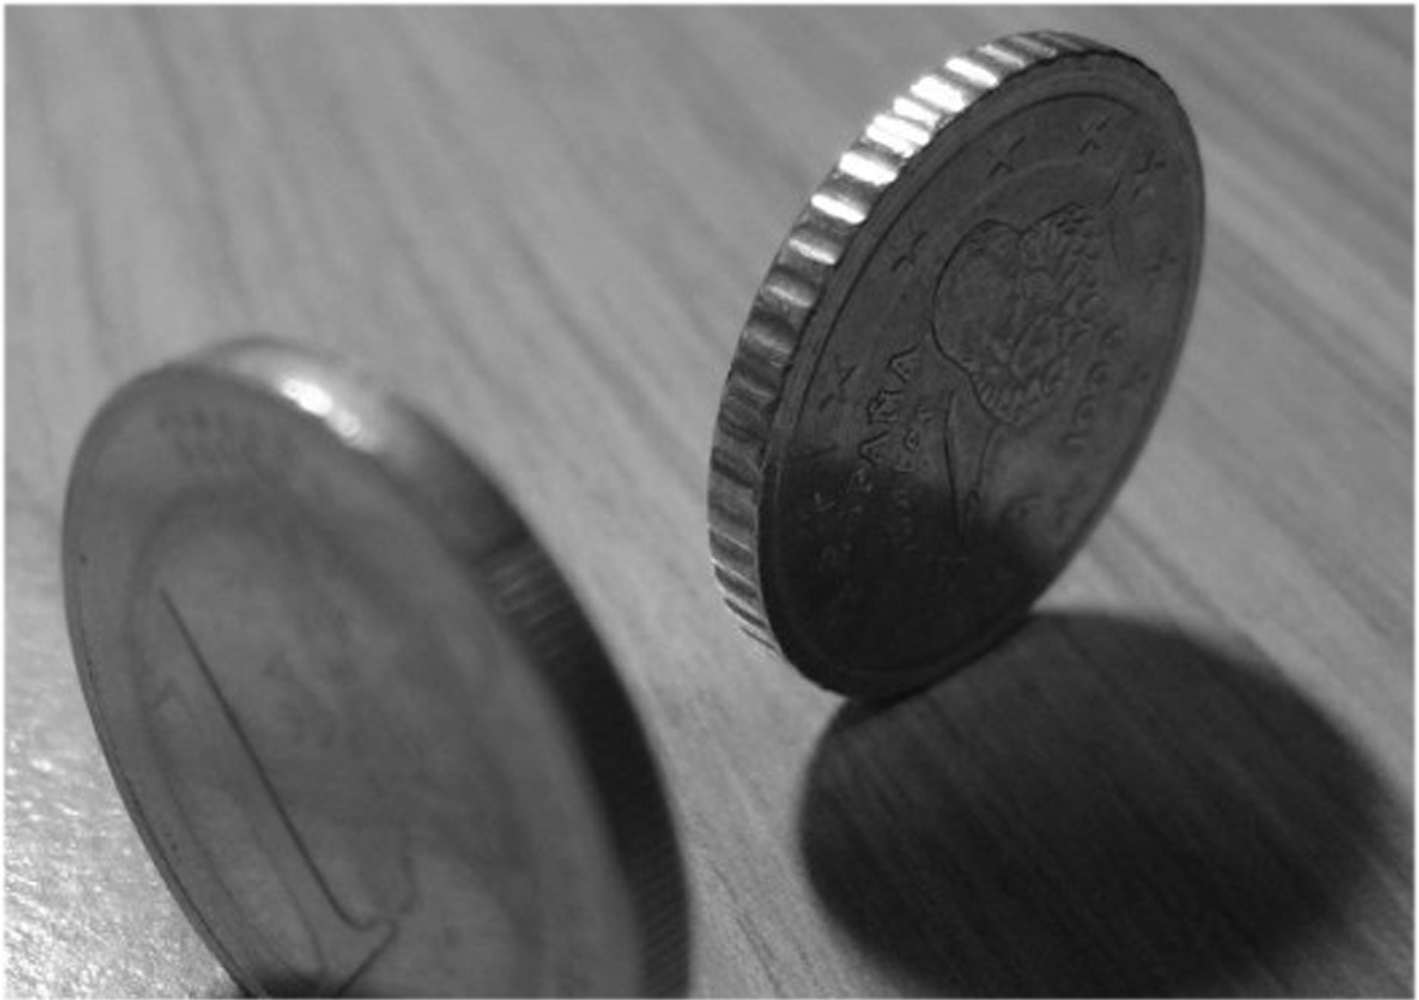 La imagen muestra unas monedas